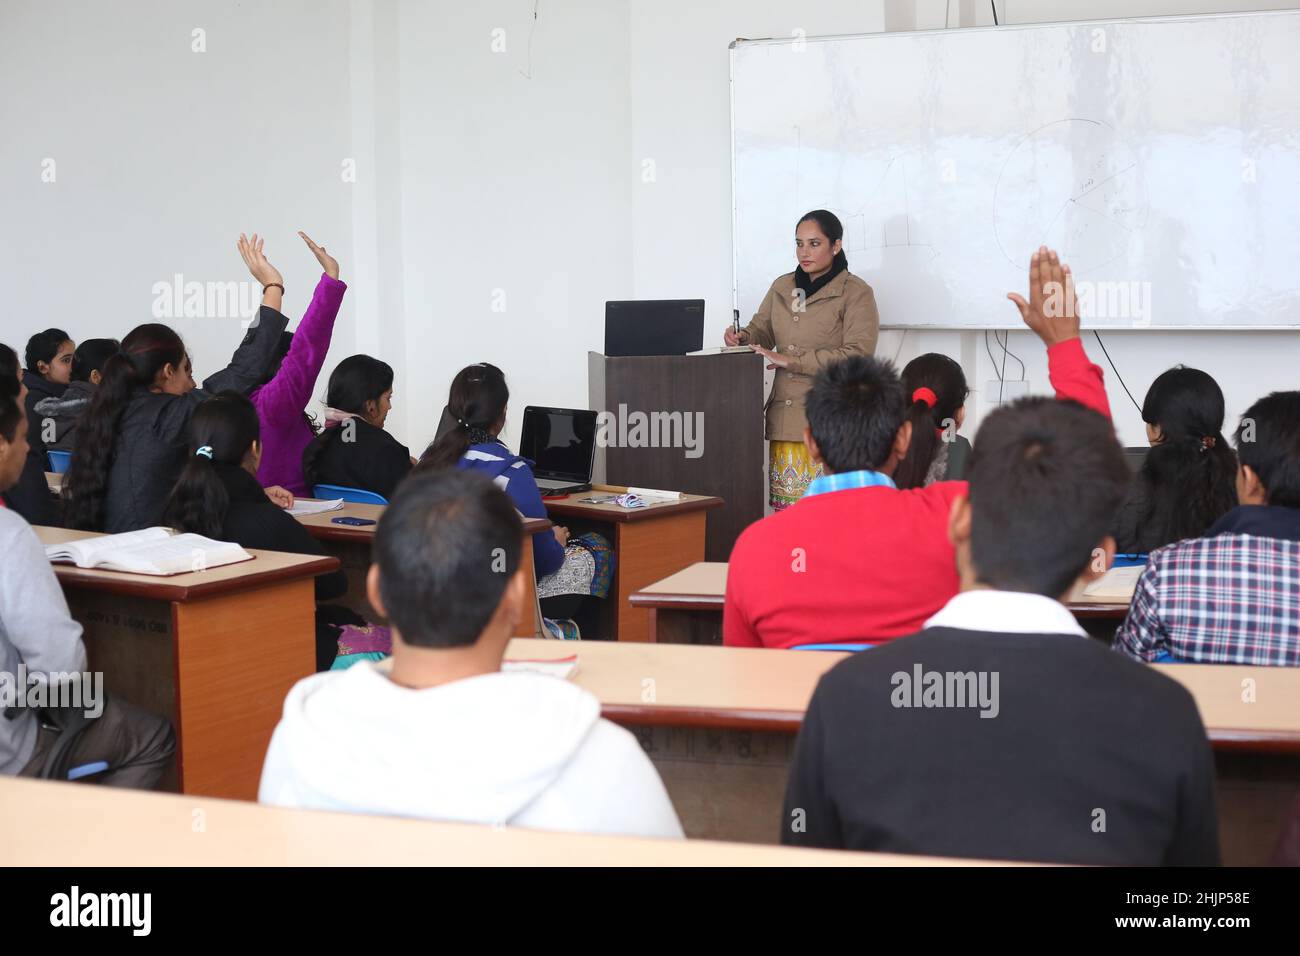 Jeunes étudiants levant la main dans une salle de classe montrant qu'ils sont prêts - étudiants dans la classe d'université en Inde Banque D'Images